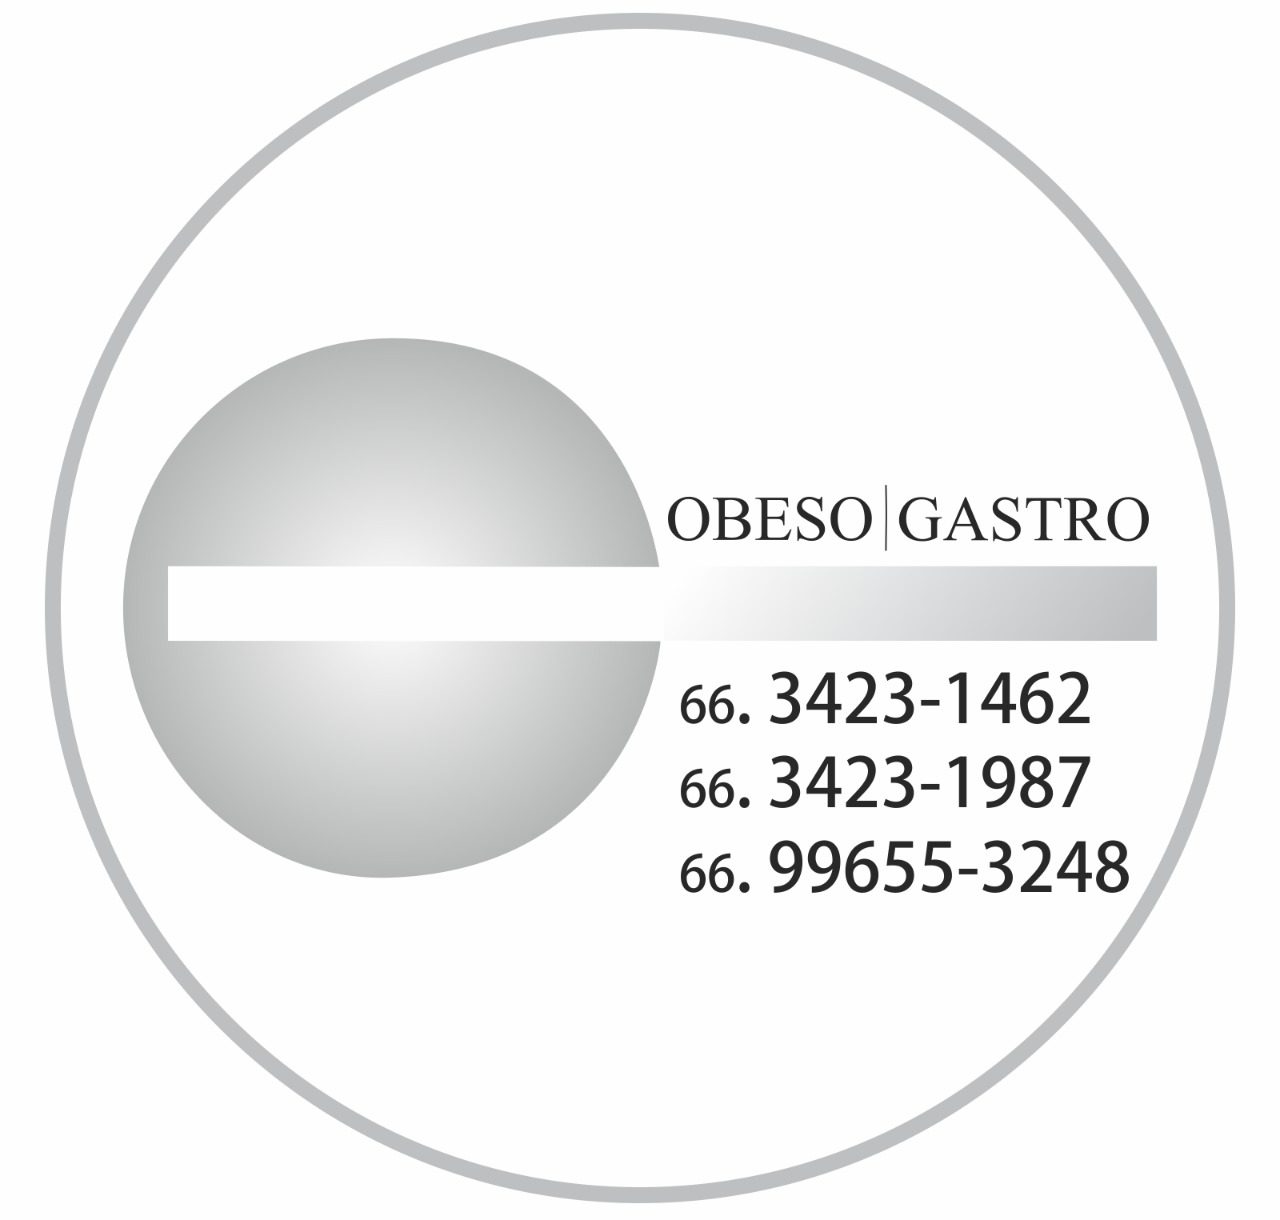 Obeso Gastro MT – Clinica em Rondonópolis MT